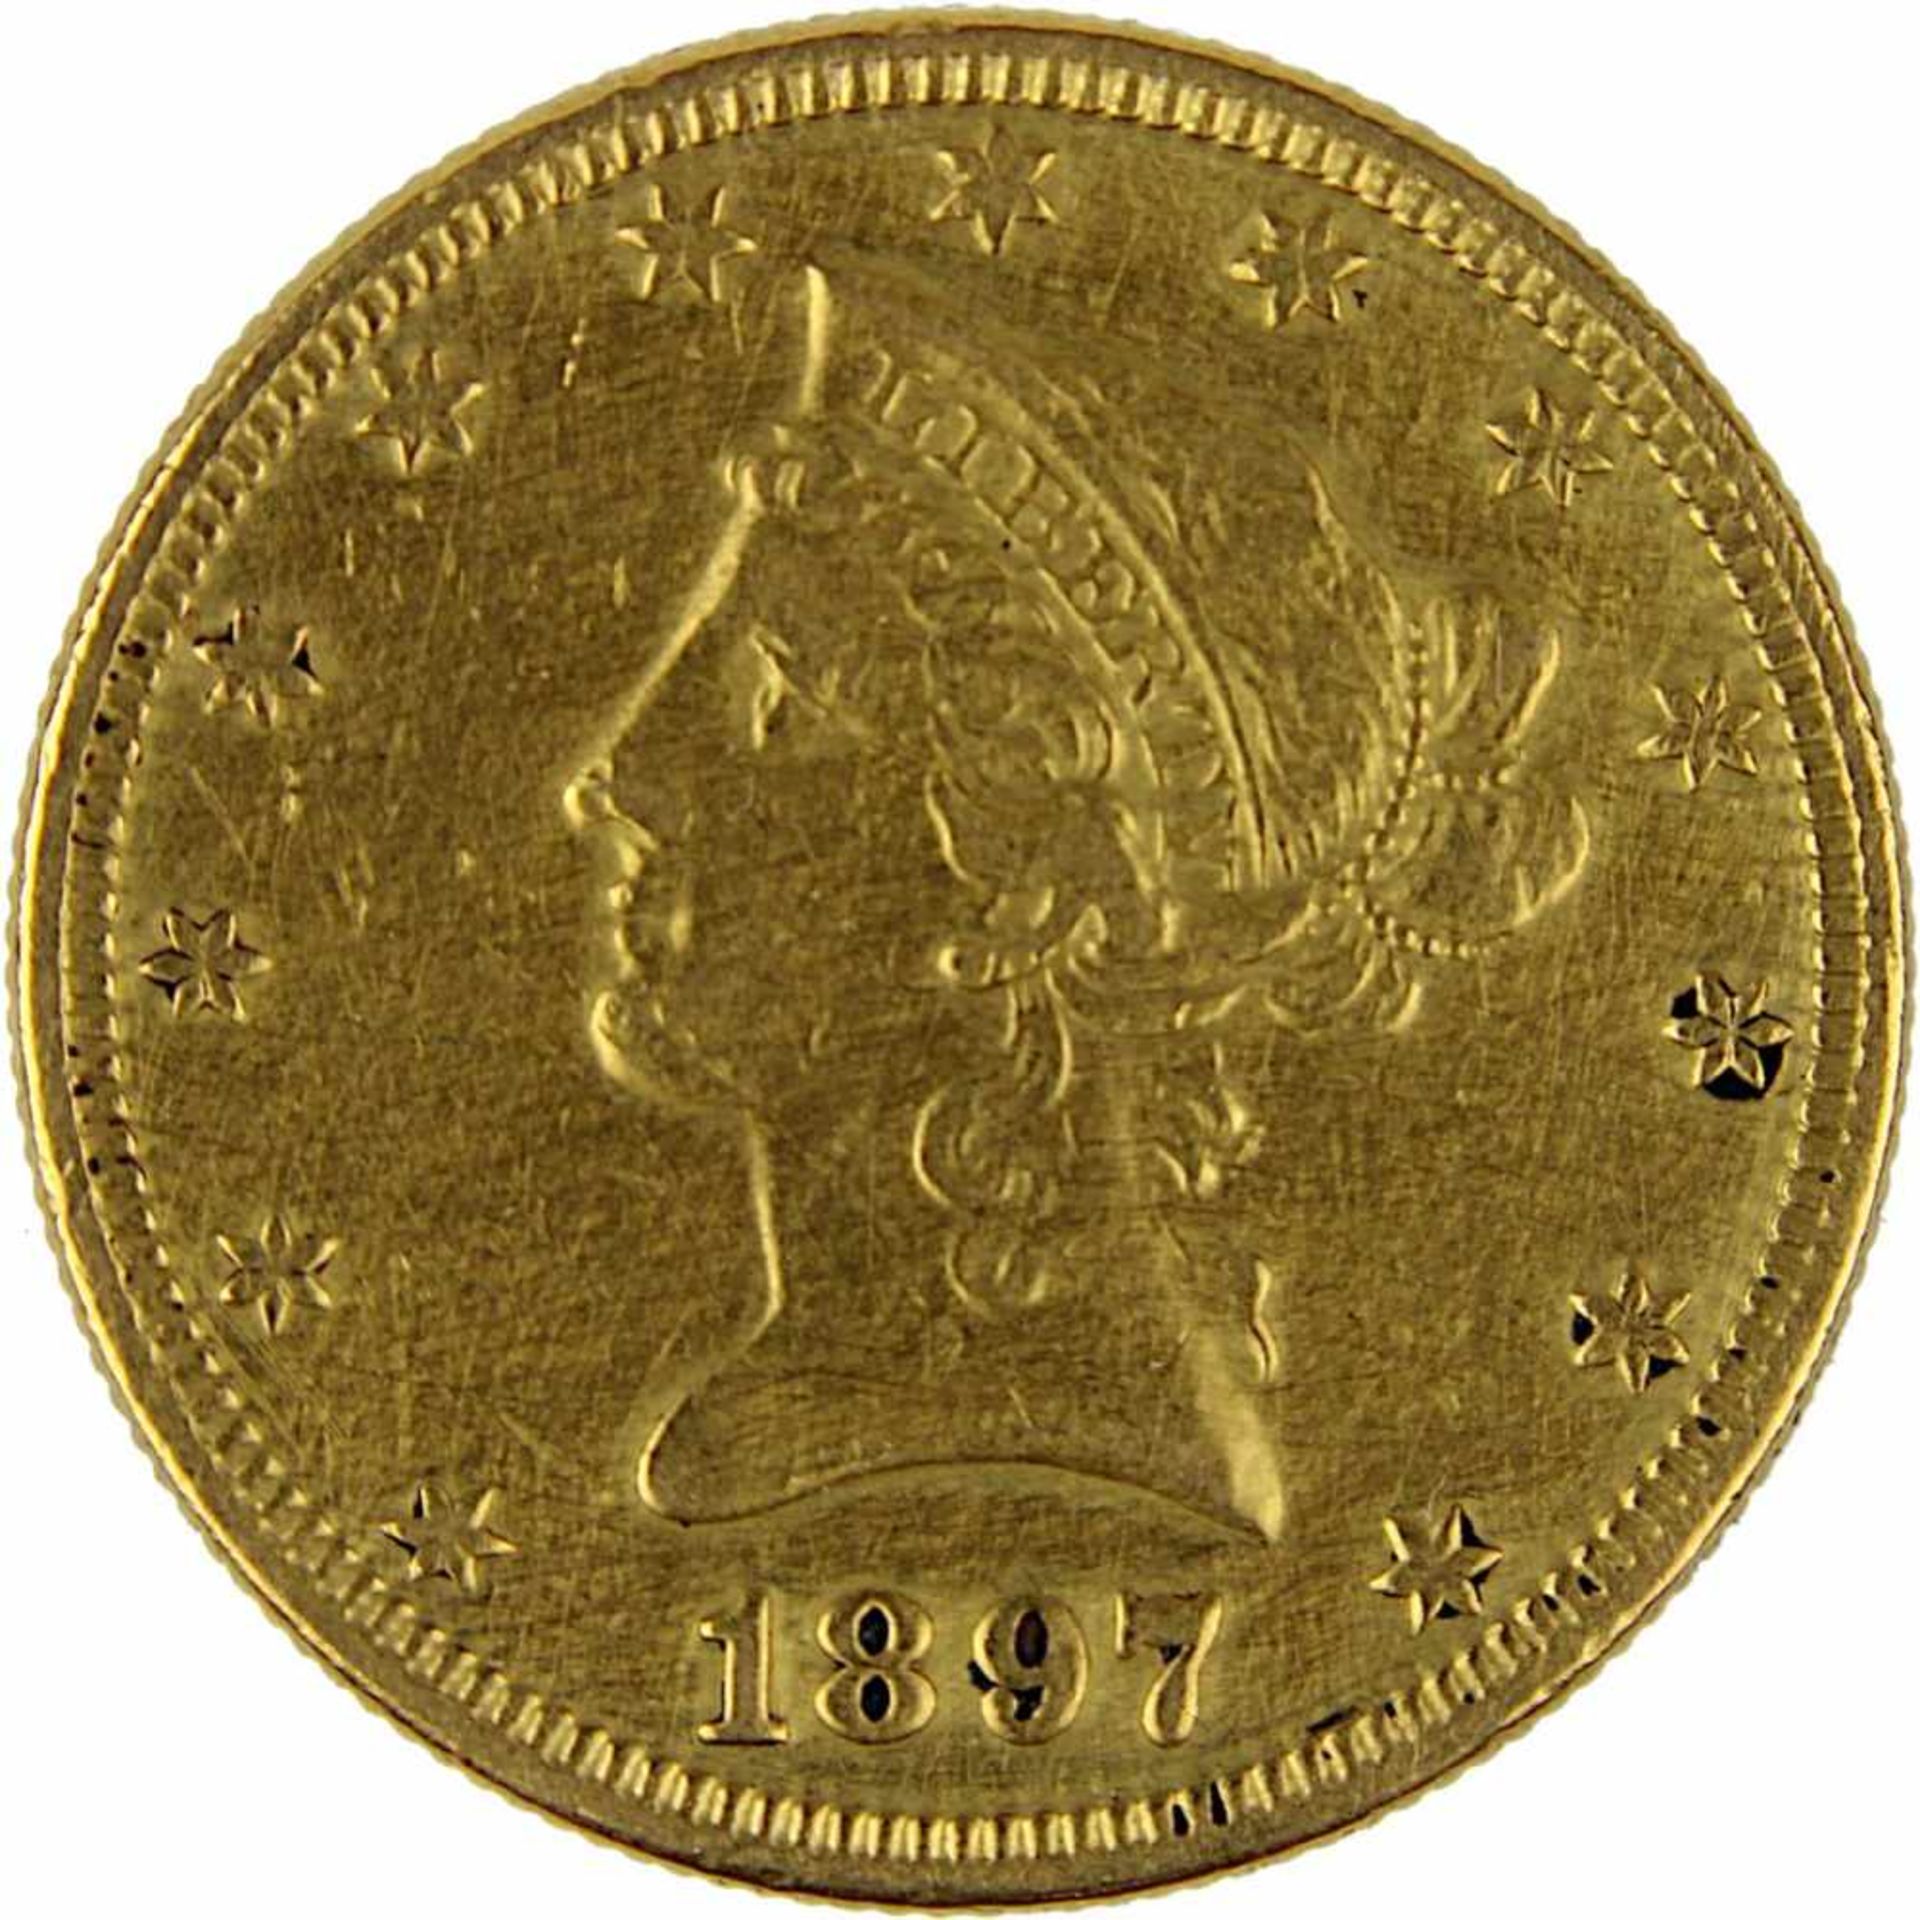 Goldmünze zu 10 Dollar, USA 1897, 900er Gold, 16,7 g, Coroned Head / Eagle, Erhaltung sehr schön - - Bild 3 aus 3